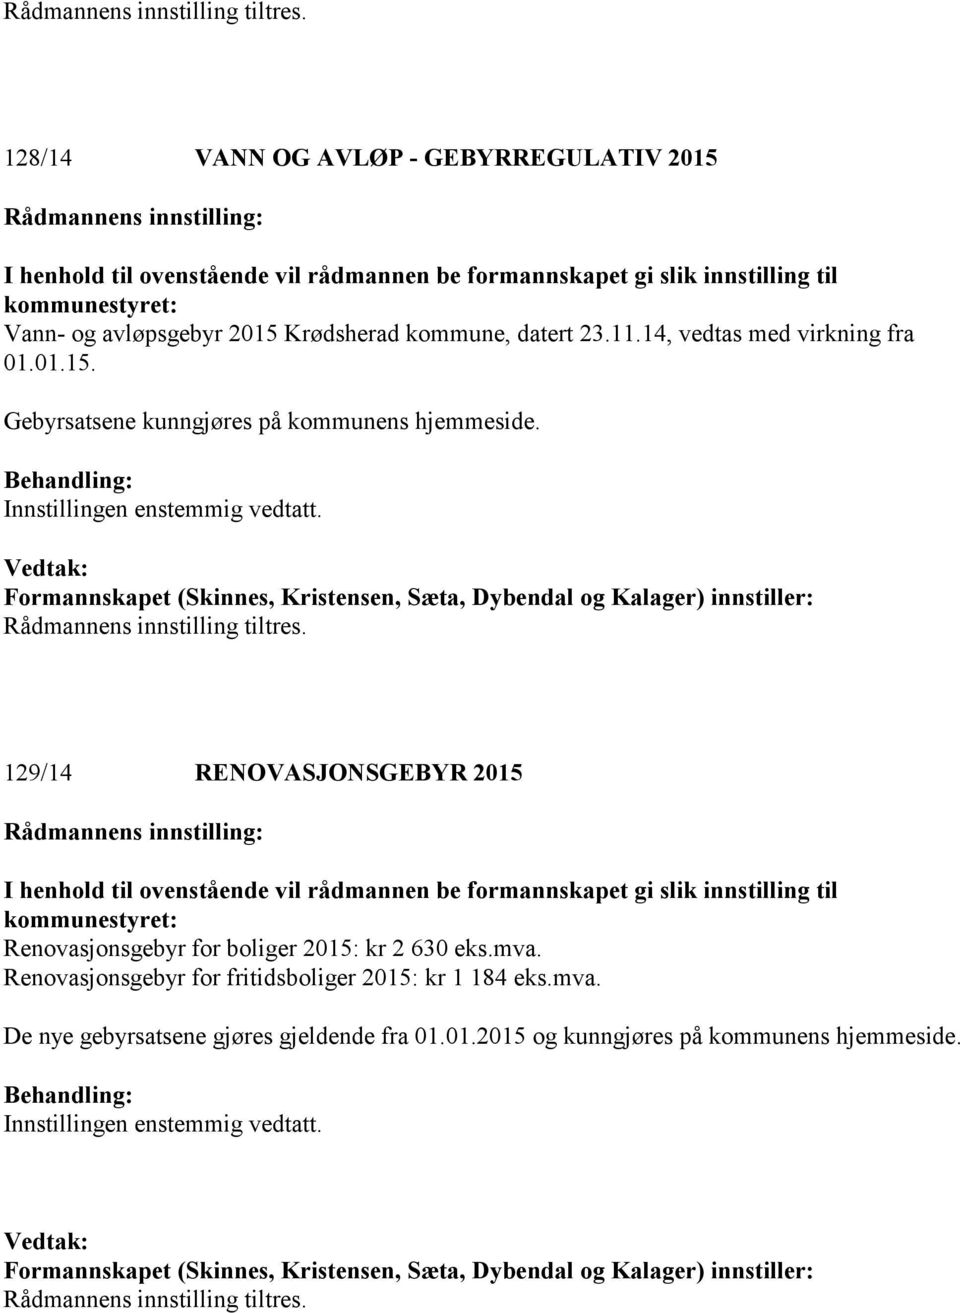 129/14 RENOVASJONSGEBYR 2015 Renovasjonsgebyr for boliger 2015: kr 2 630 eks.mva.